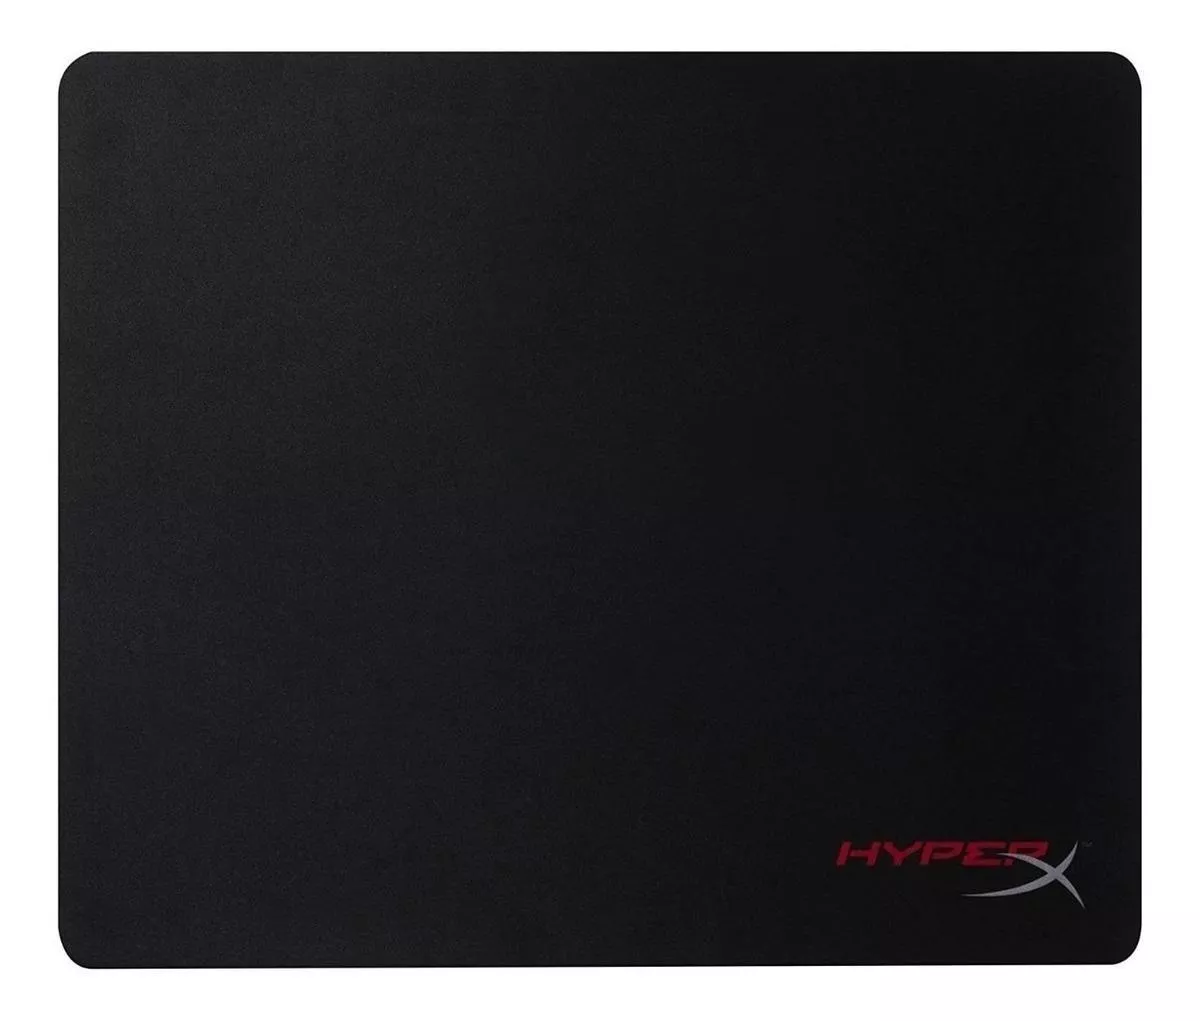 Mouse Pad Gamer Hyperx Fury Pro De Caucho Y Tela L 420mm X 500mm X 3mm Negro